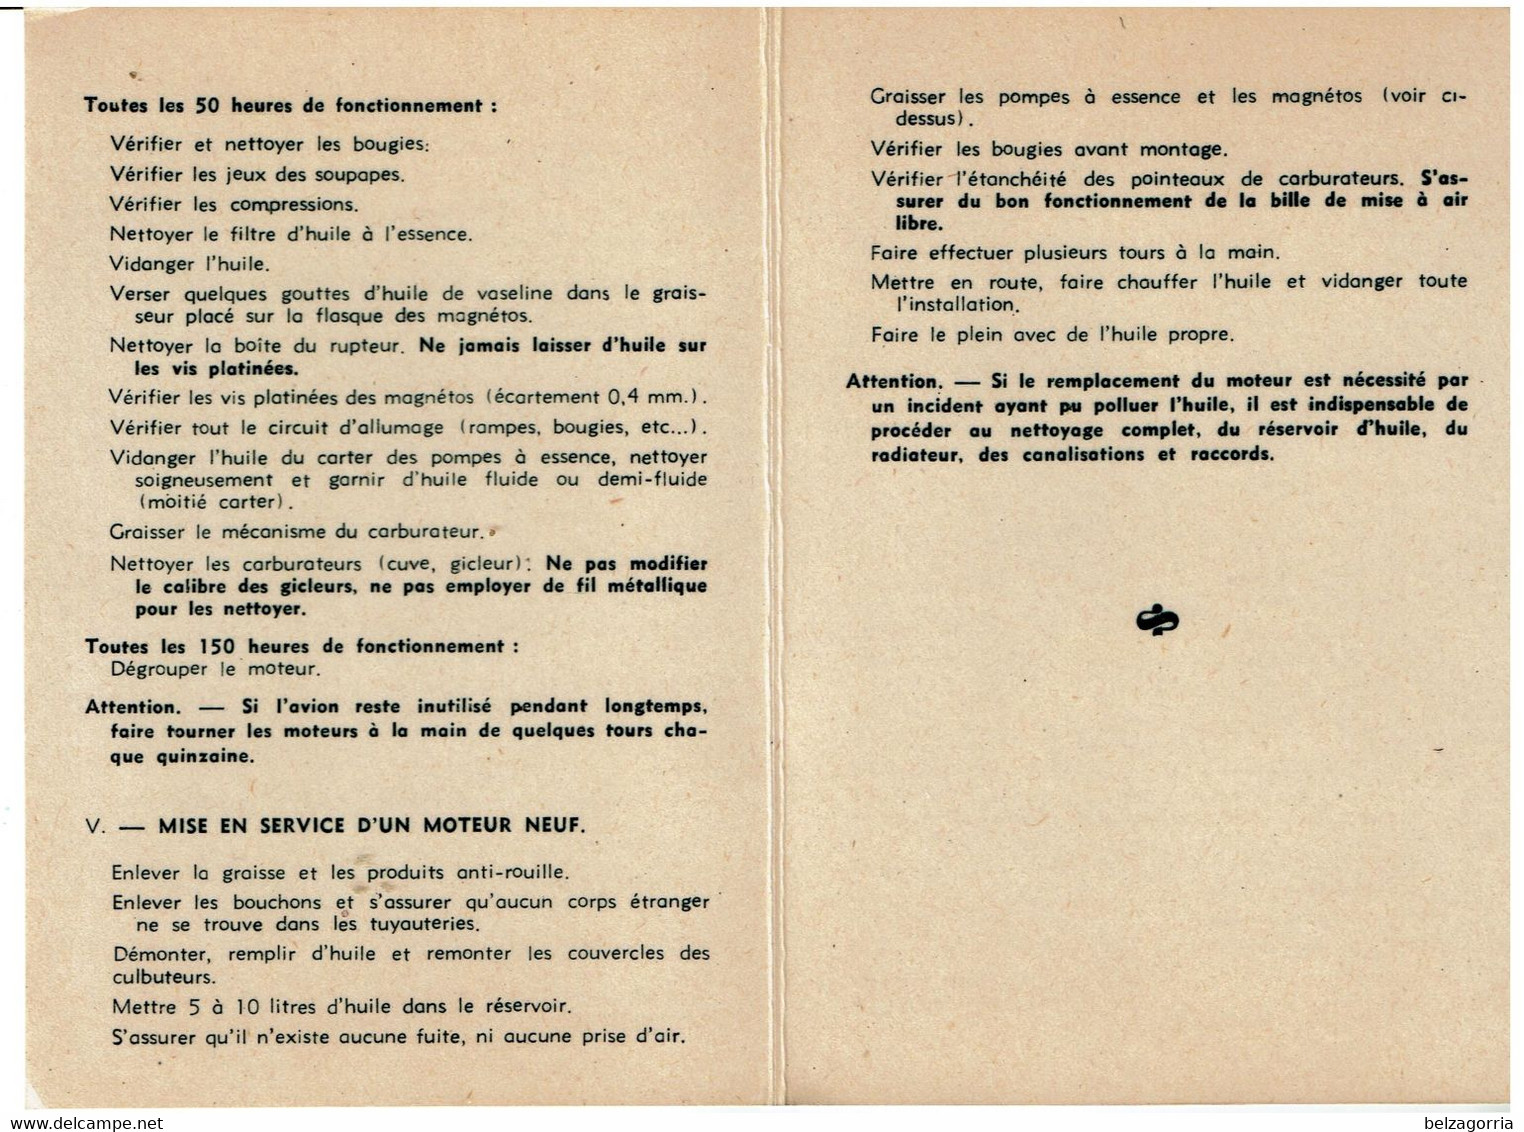 MANUEL MOTEURS AVIATION RENAULT 4 P.01 1927 CARTE DE SERVICE UTILISATION ENTRETIEN -TRES RARE - VOIR SCANS - Manuali